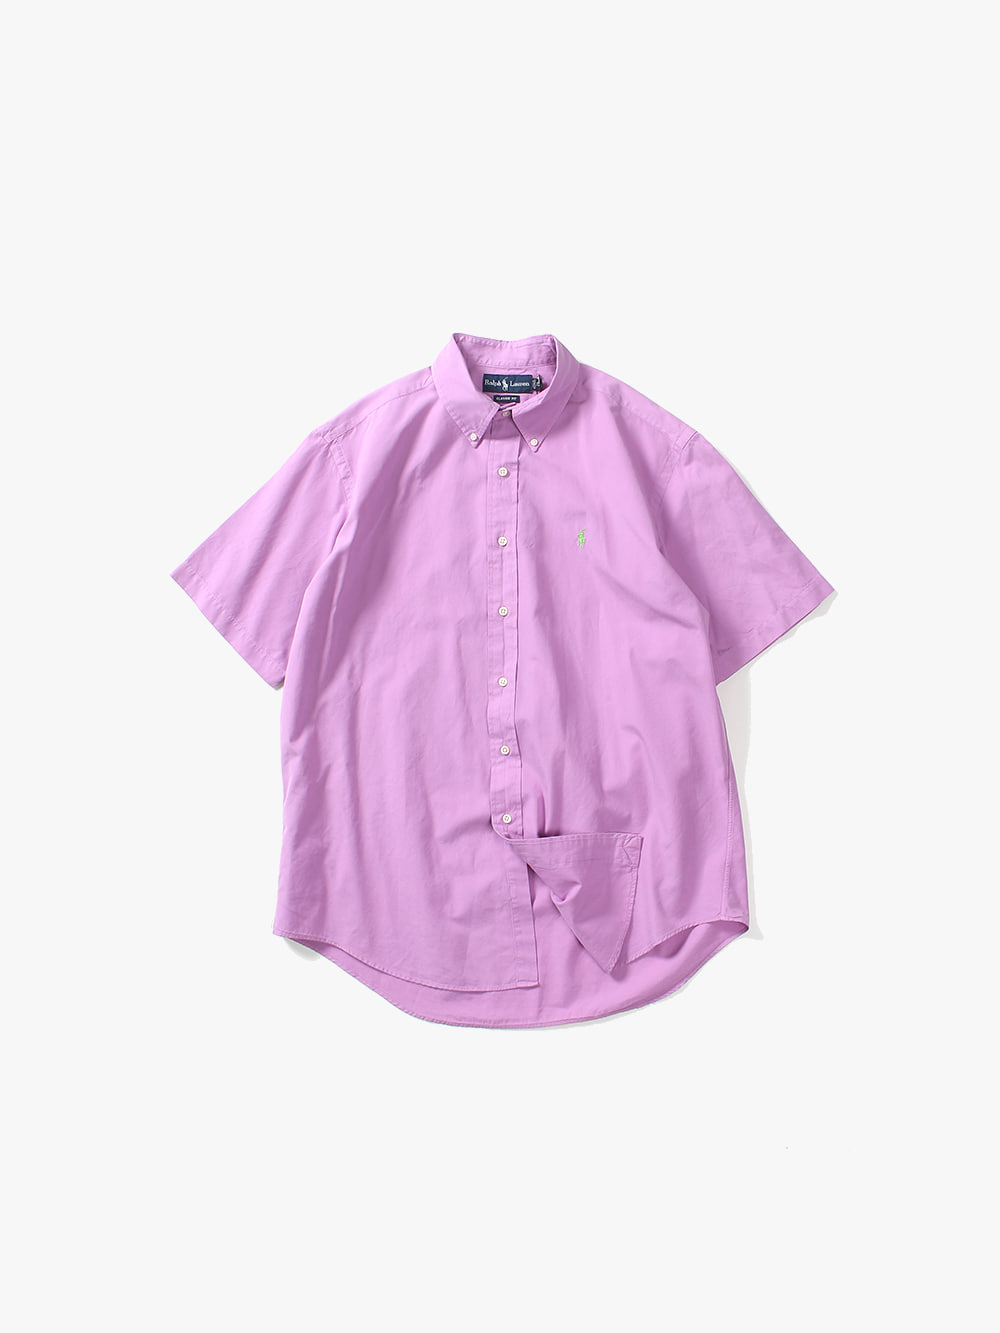 [ L ] Polo Ralph Lauren 1/2 Shirt (6176)